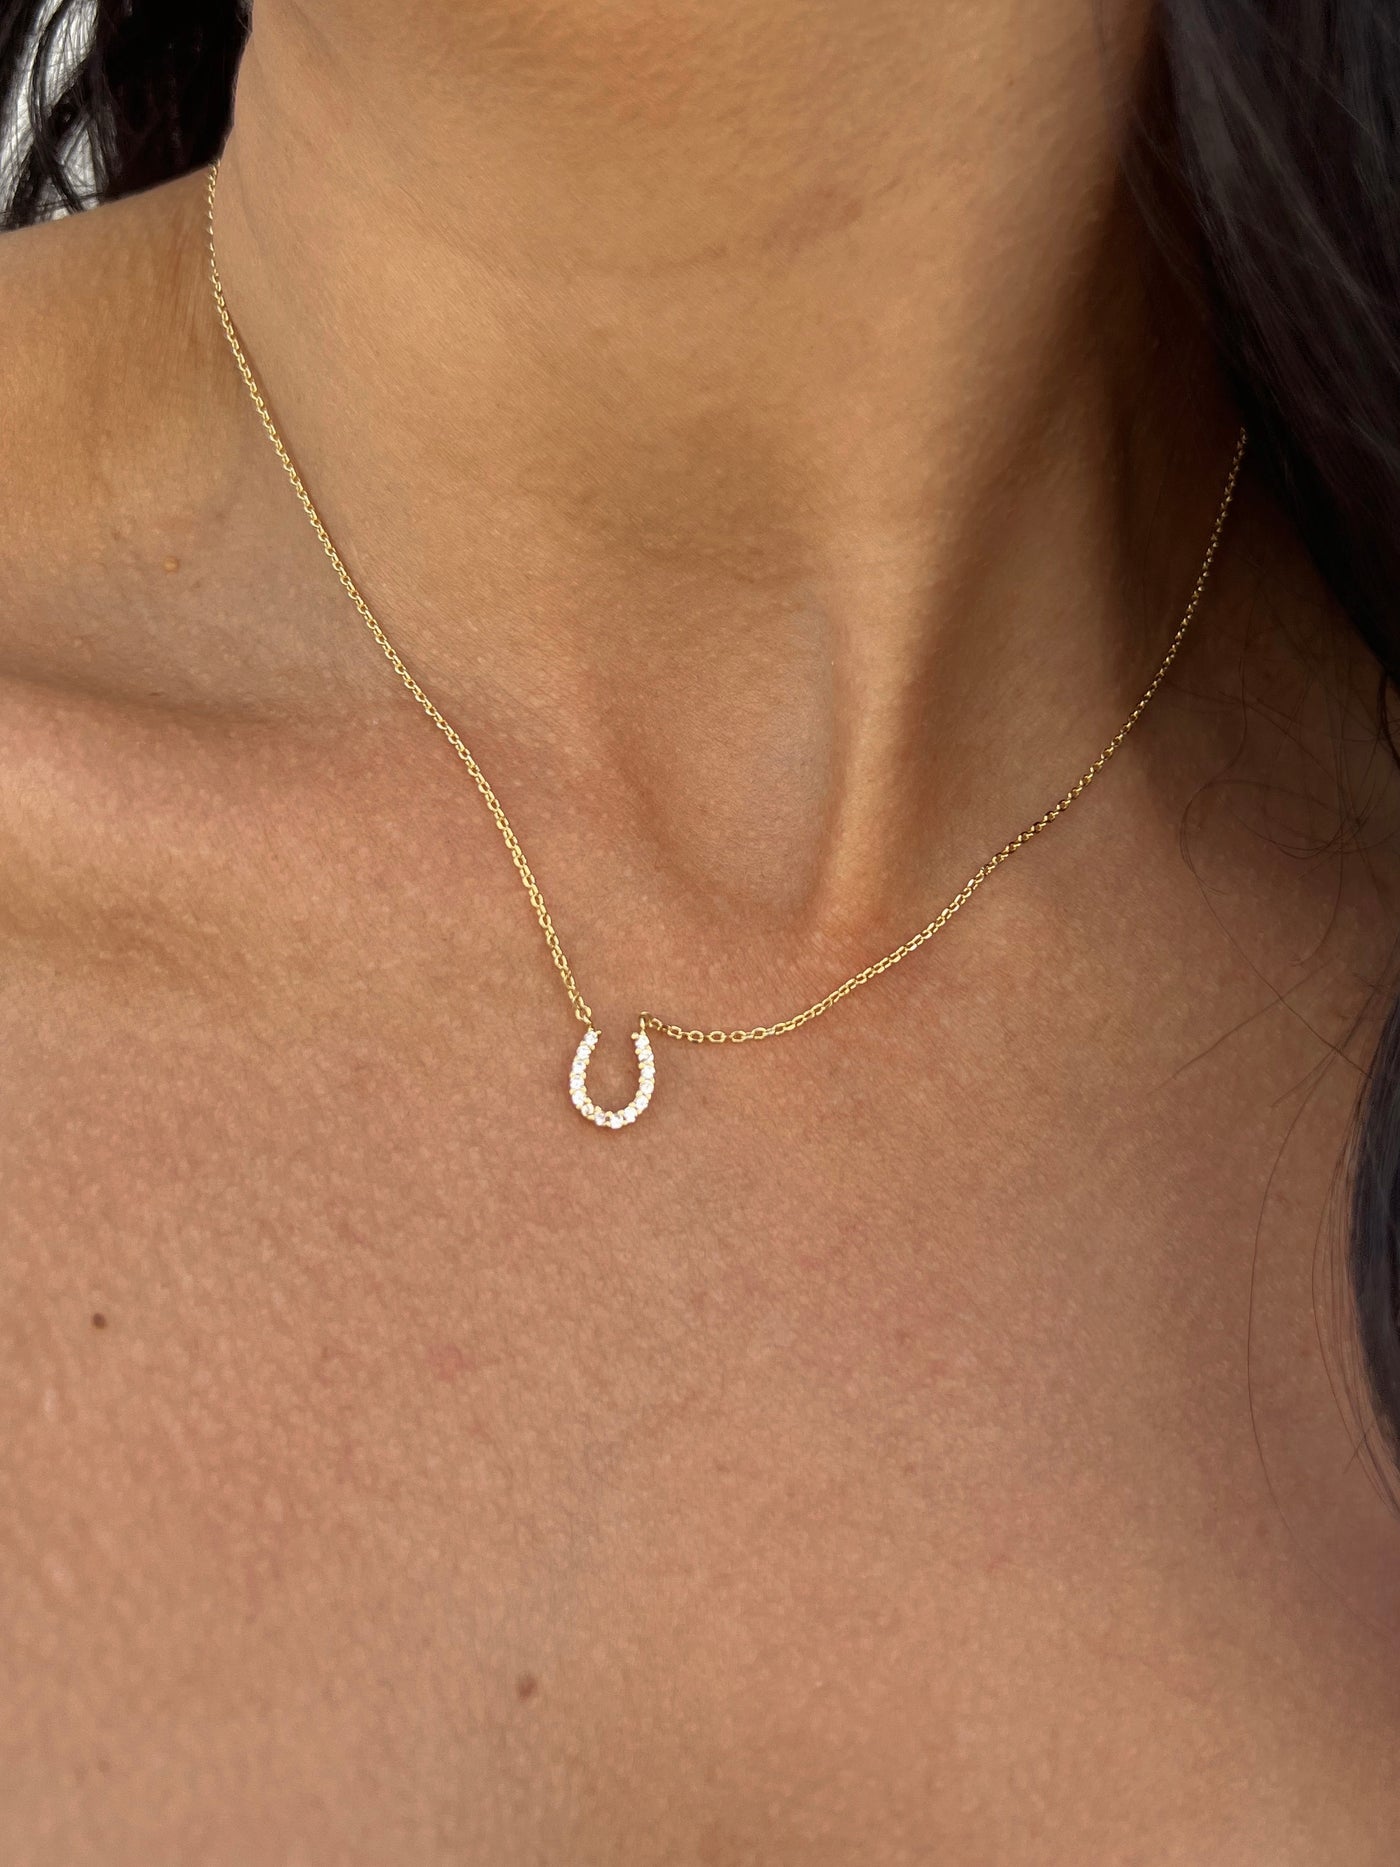 Lady Luck - Horseshoe Charm Necklace